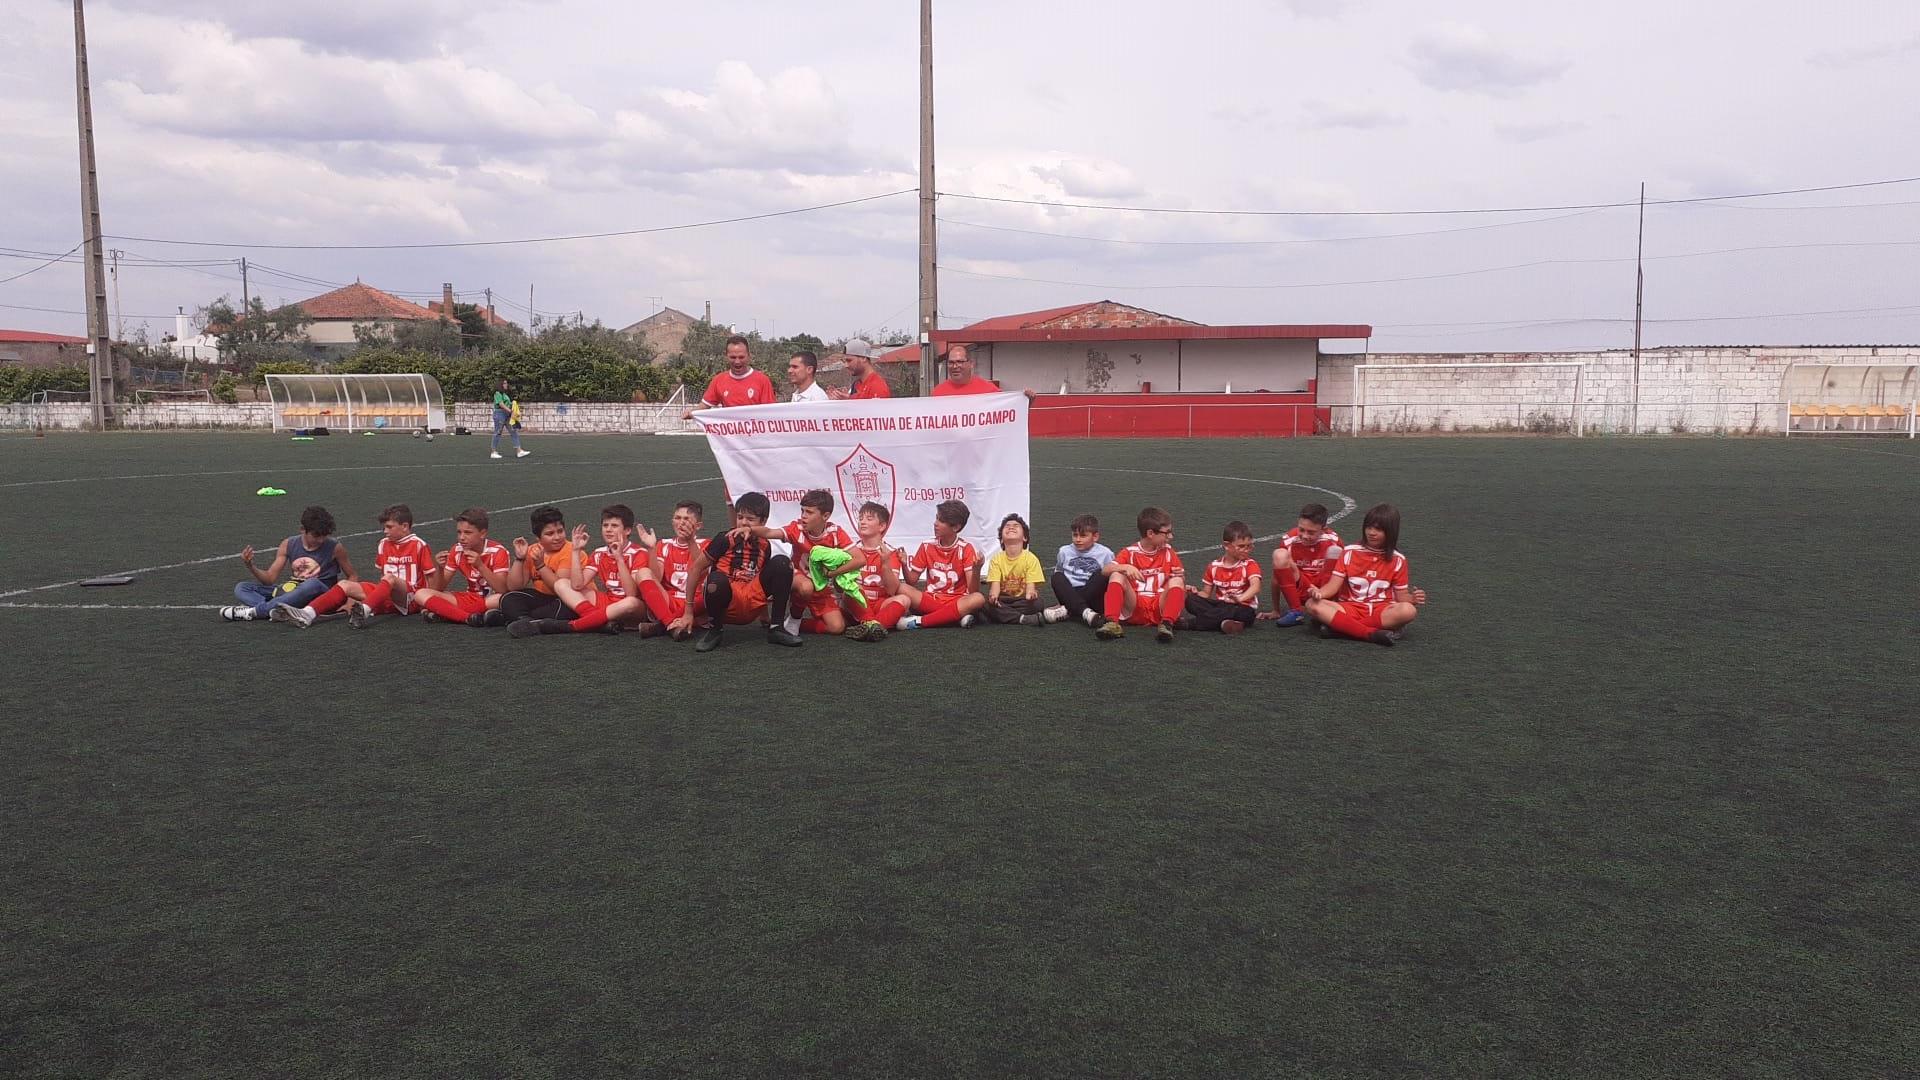 Infantis Futebol 7: ACR Atalaia do Campo conquista 2ª Divisão Campeonato Distrital